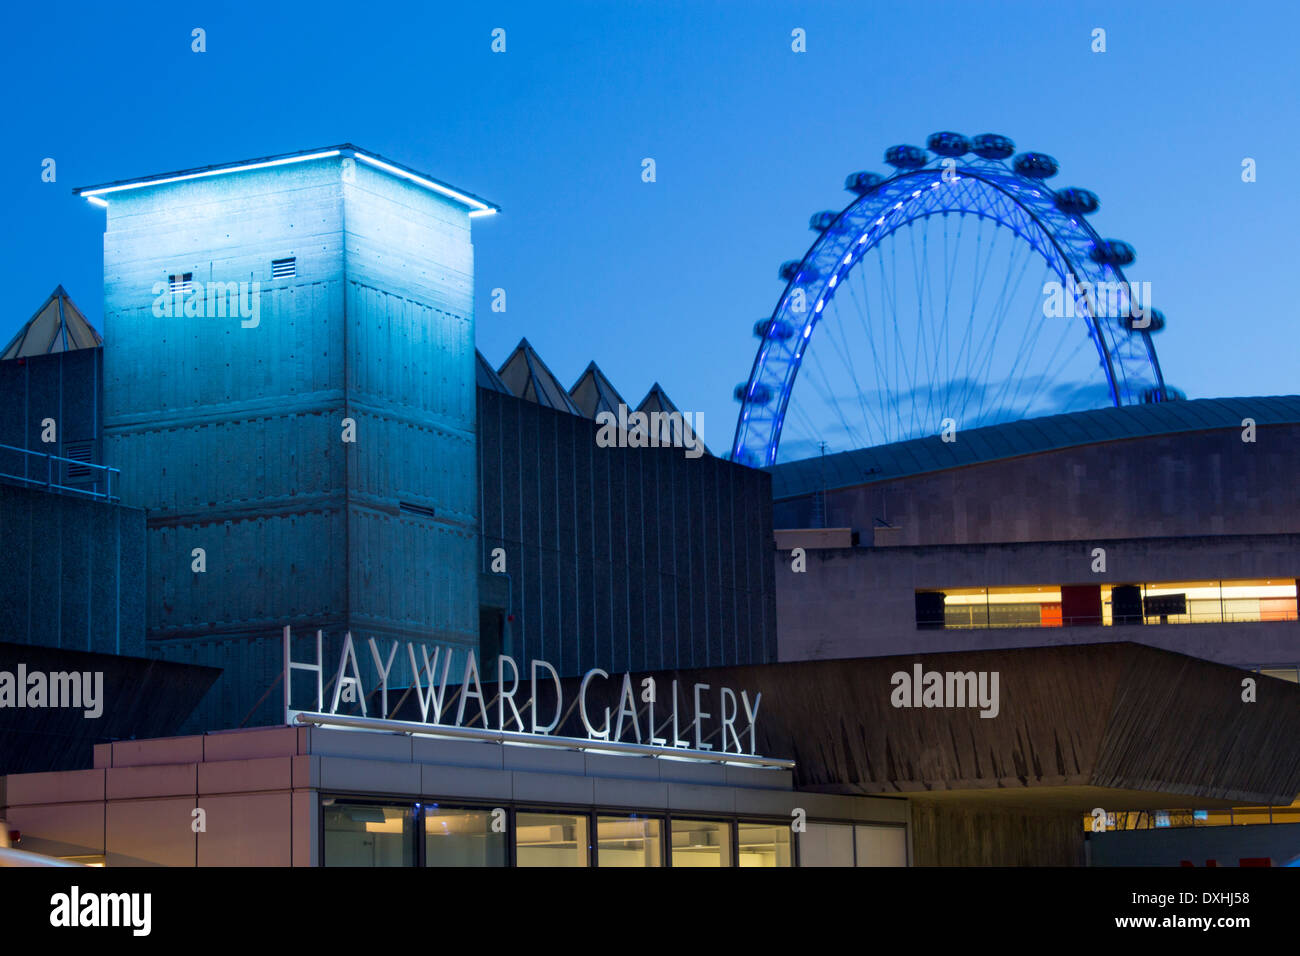 La Hayward Gallery signer Rive sud avec London Eye au-dessus la nuit tombée crépuscule soir London England UK Banque D'Images